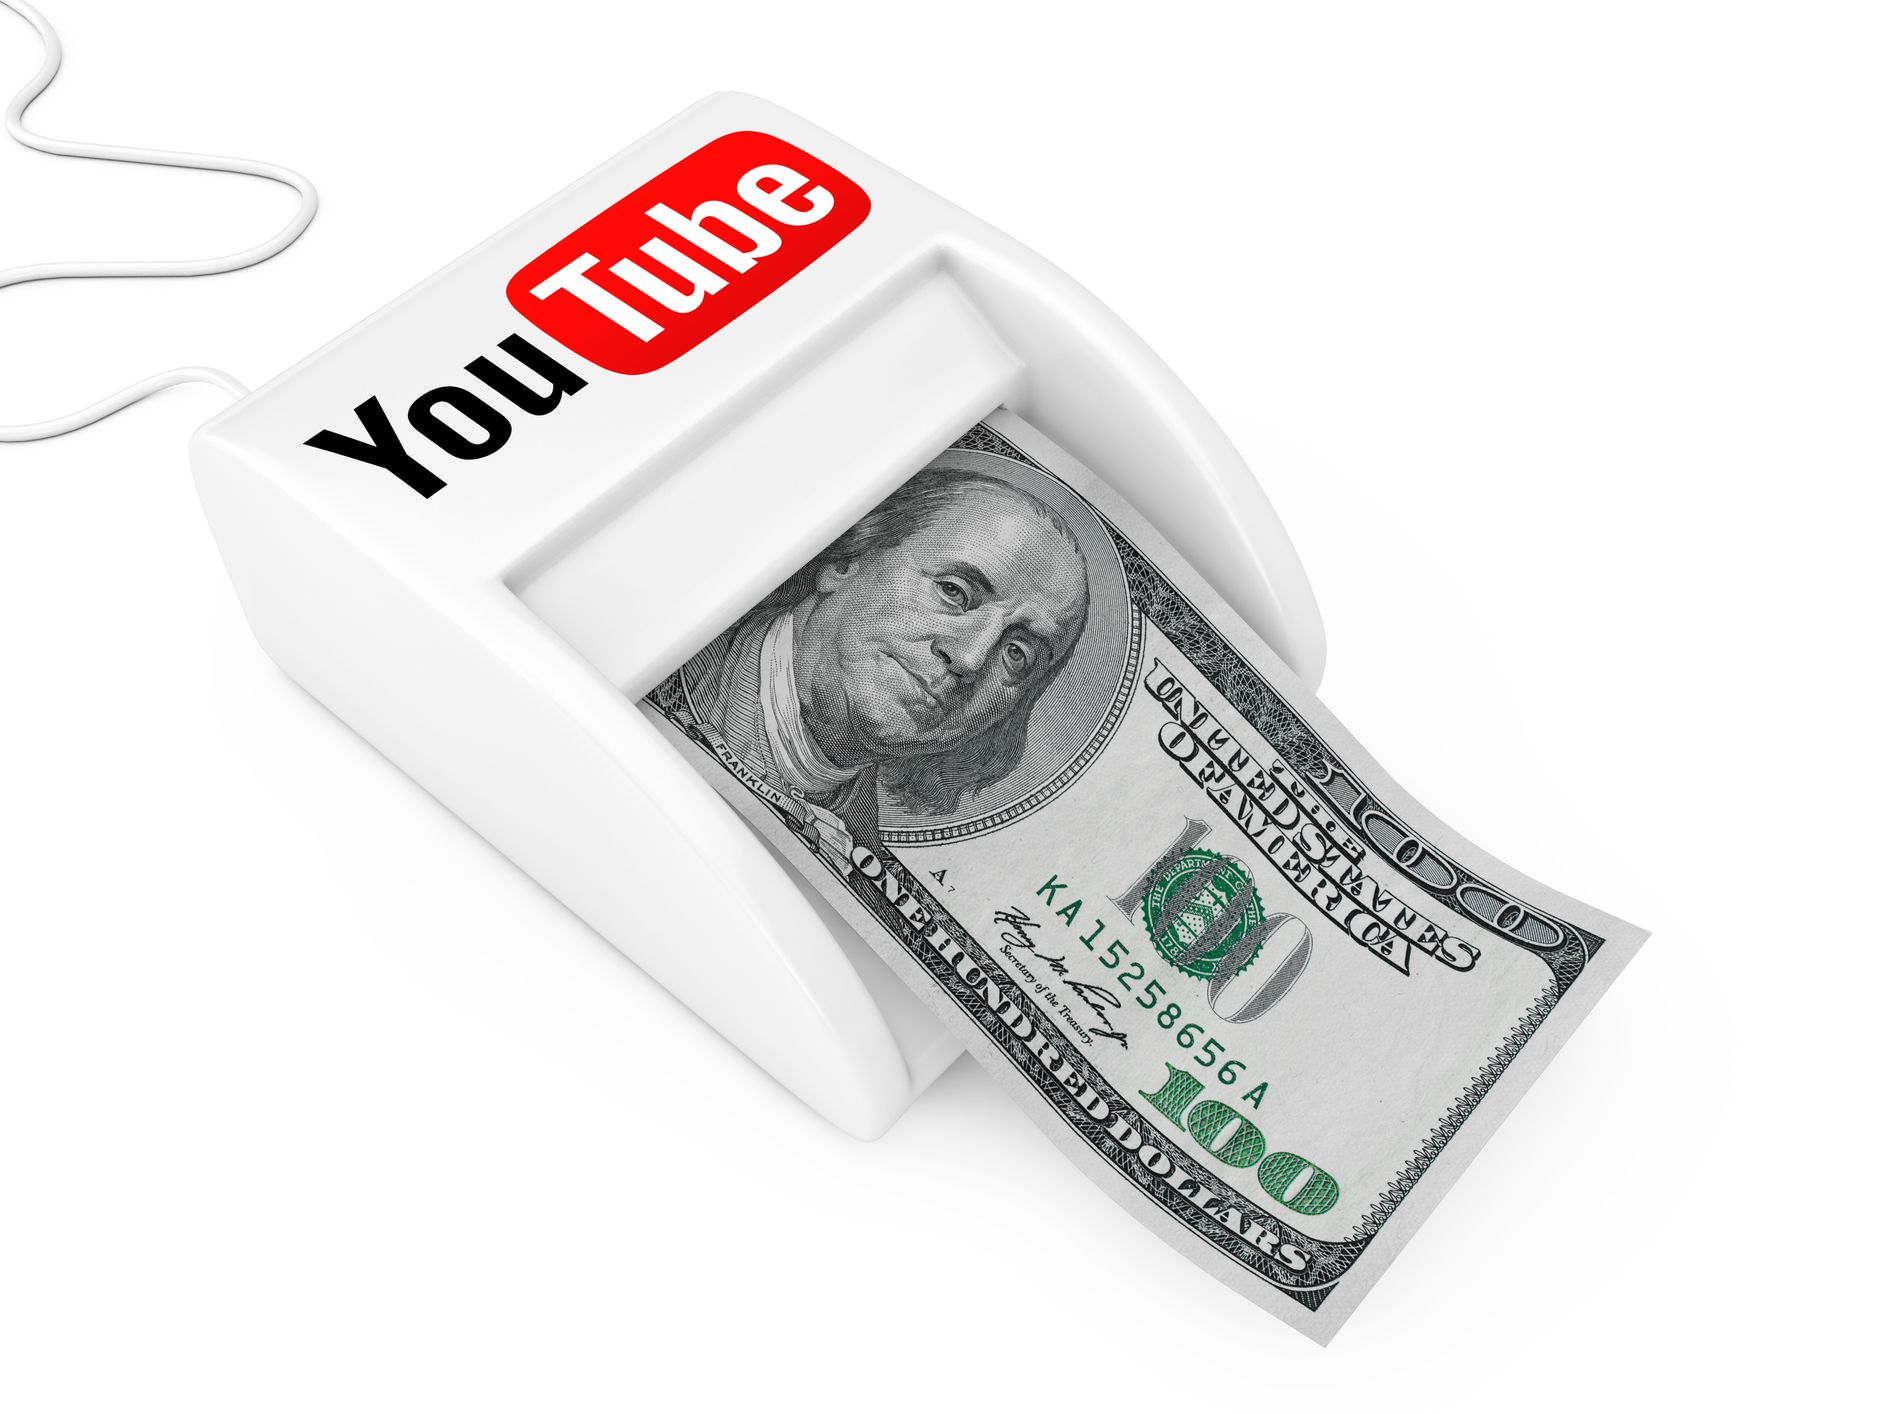 Làm thế nào để trở thành Youtuber với thu nhập hàng trăm nghìn hàng tháng? Kiếm tiền từ YouTube như thế nào?